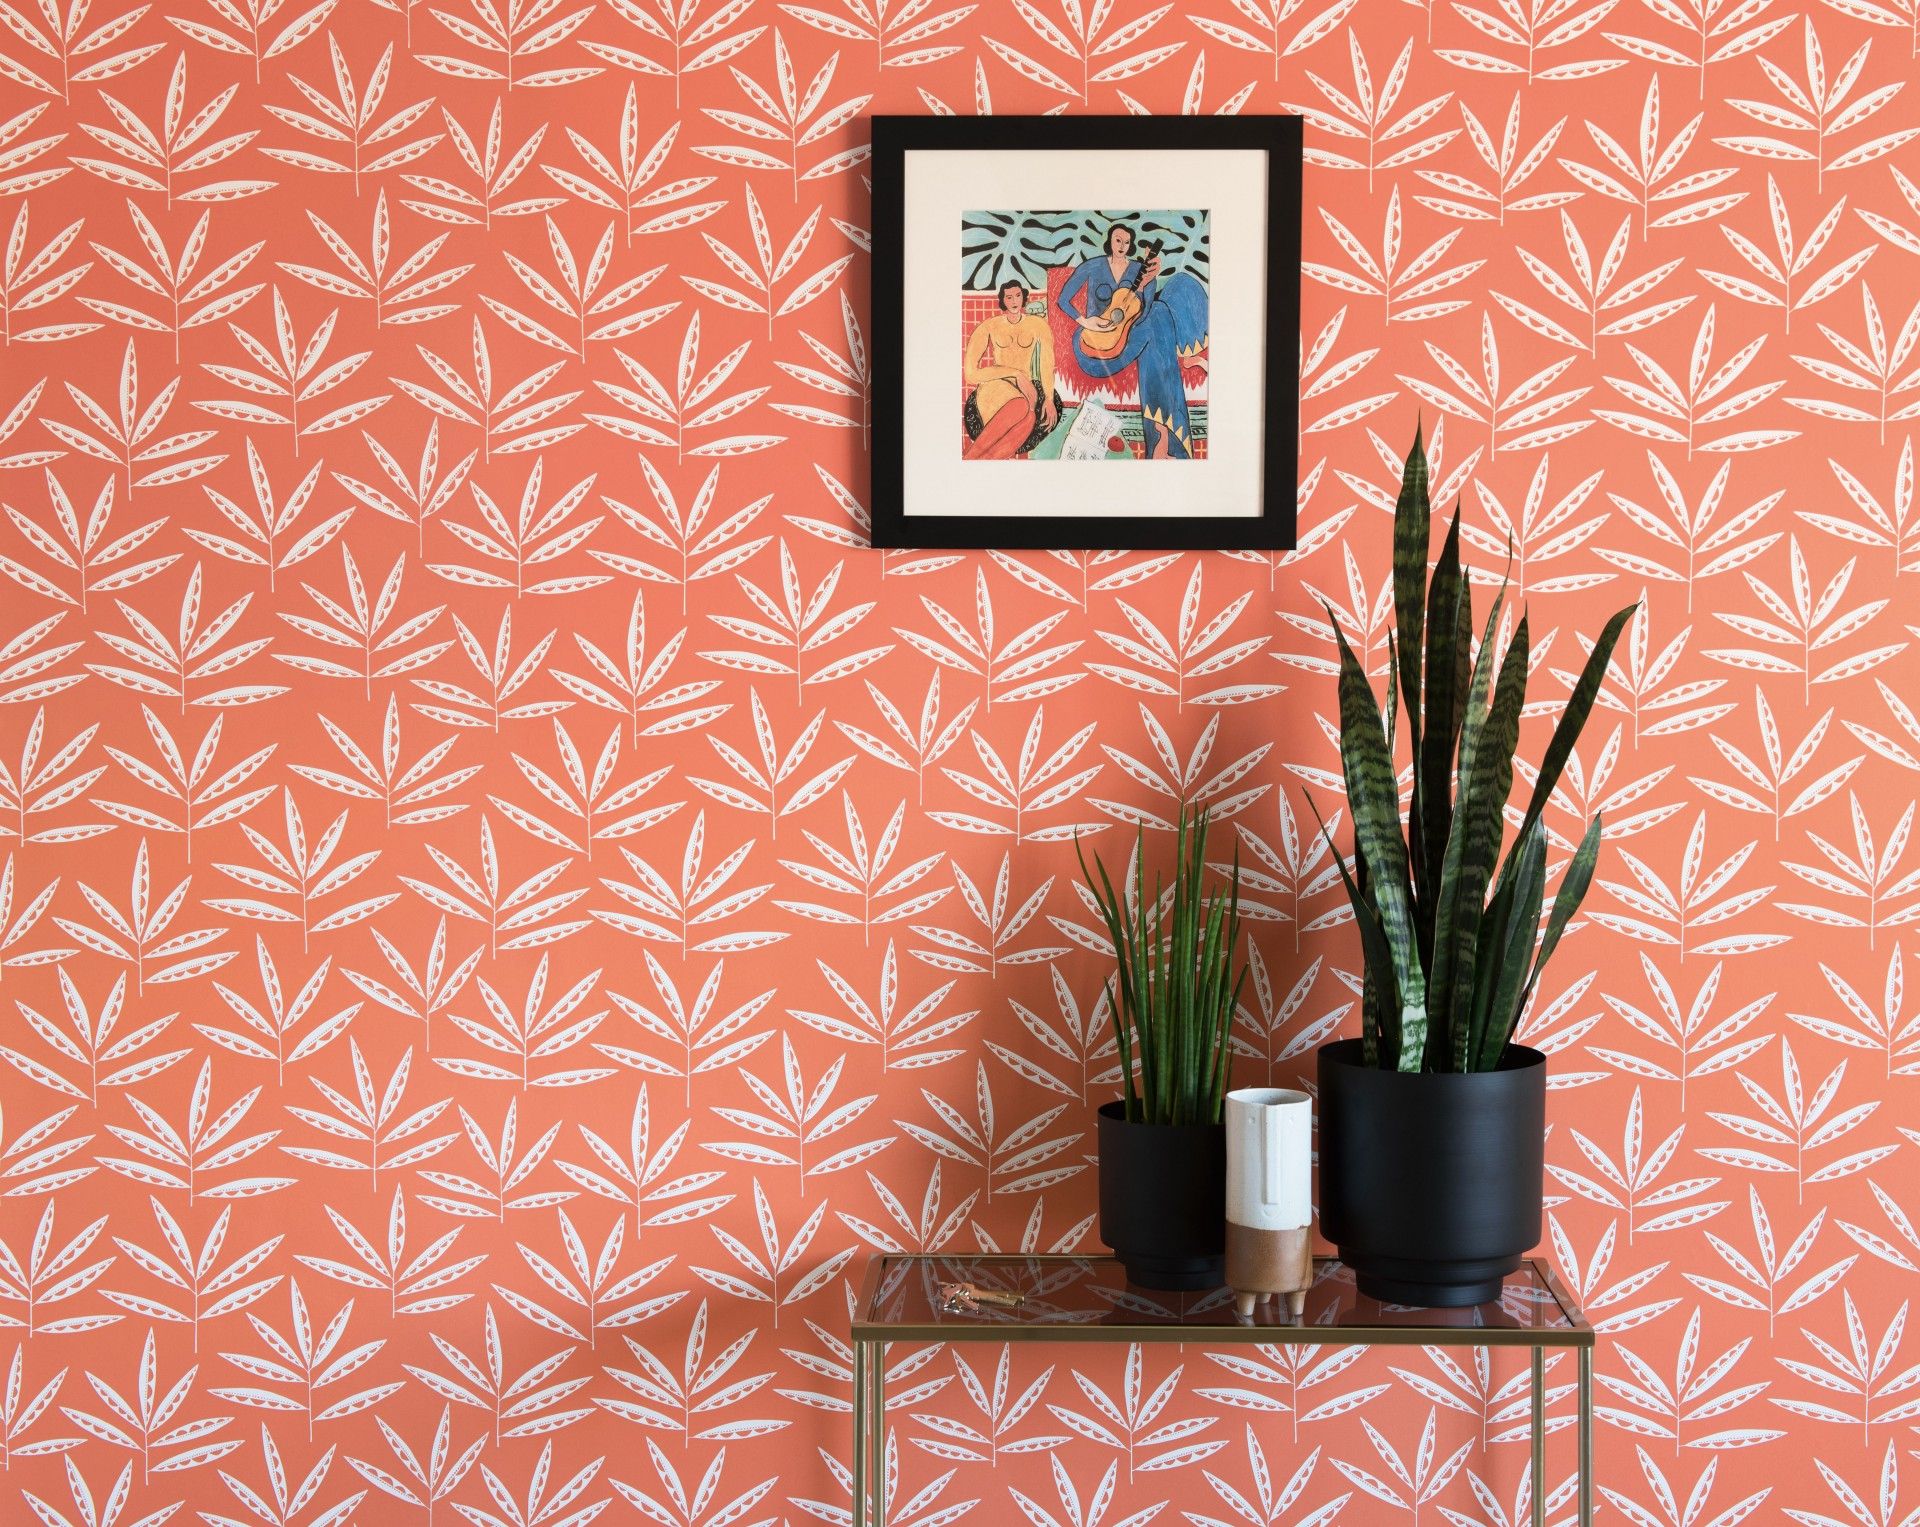 Orange wallpaper: Up trực tiếp về các bức hình giấy dán tường màu cam rực rỡ! Với kiểu dáng, họa tiết đa dạng với những sắc màu trong trẻo, giấy dán tường màu cam là lựa chọn hoàn hảo để mang lại không gian sống tươi mới tràn đầy sức sống cho ngôi nhà của bạn.